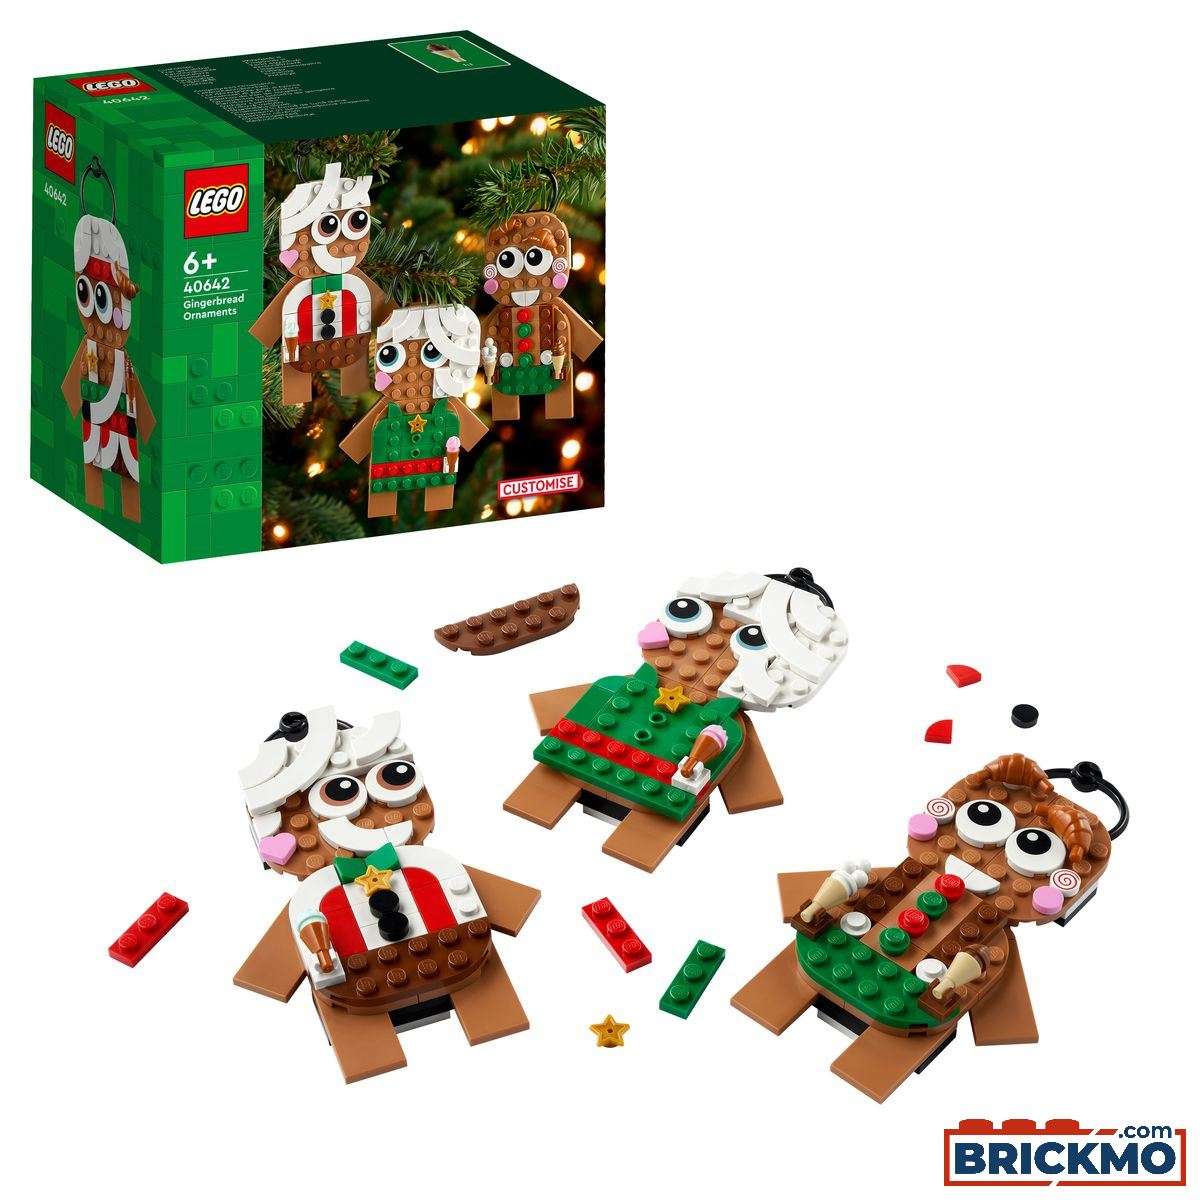 LEGO 40642 Ornamenti di pan di zenzero 40642